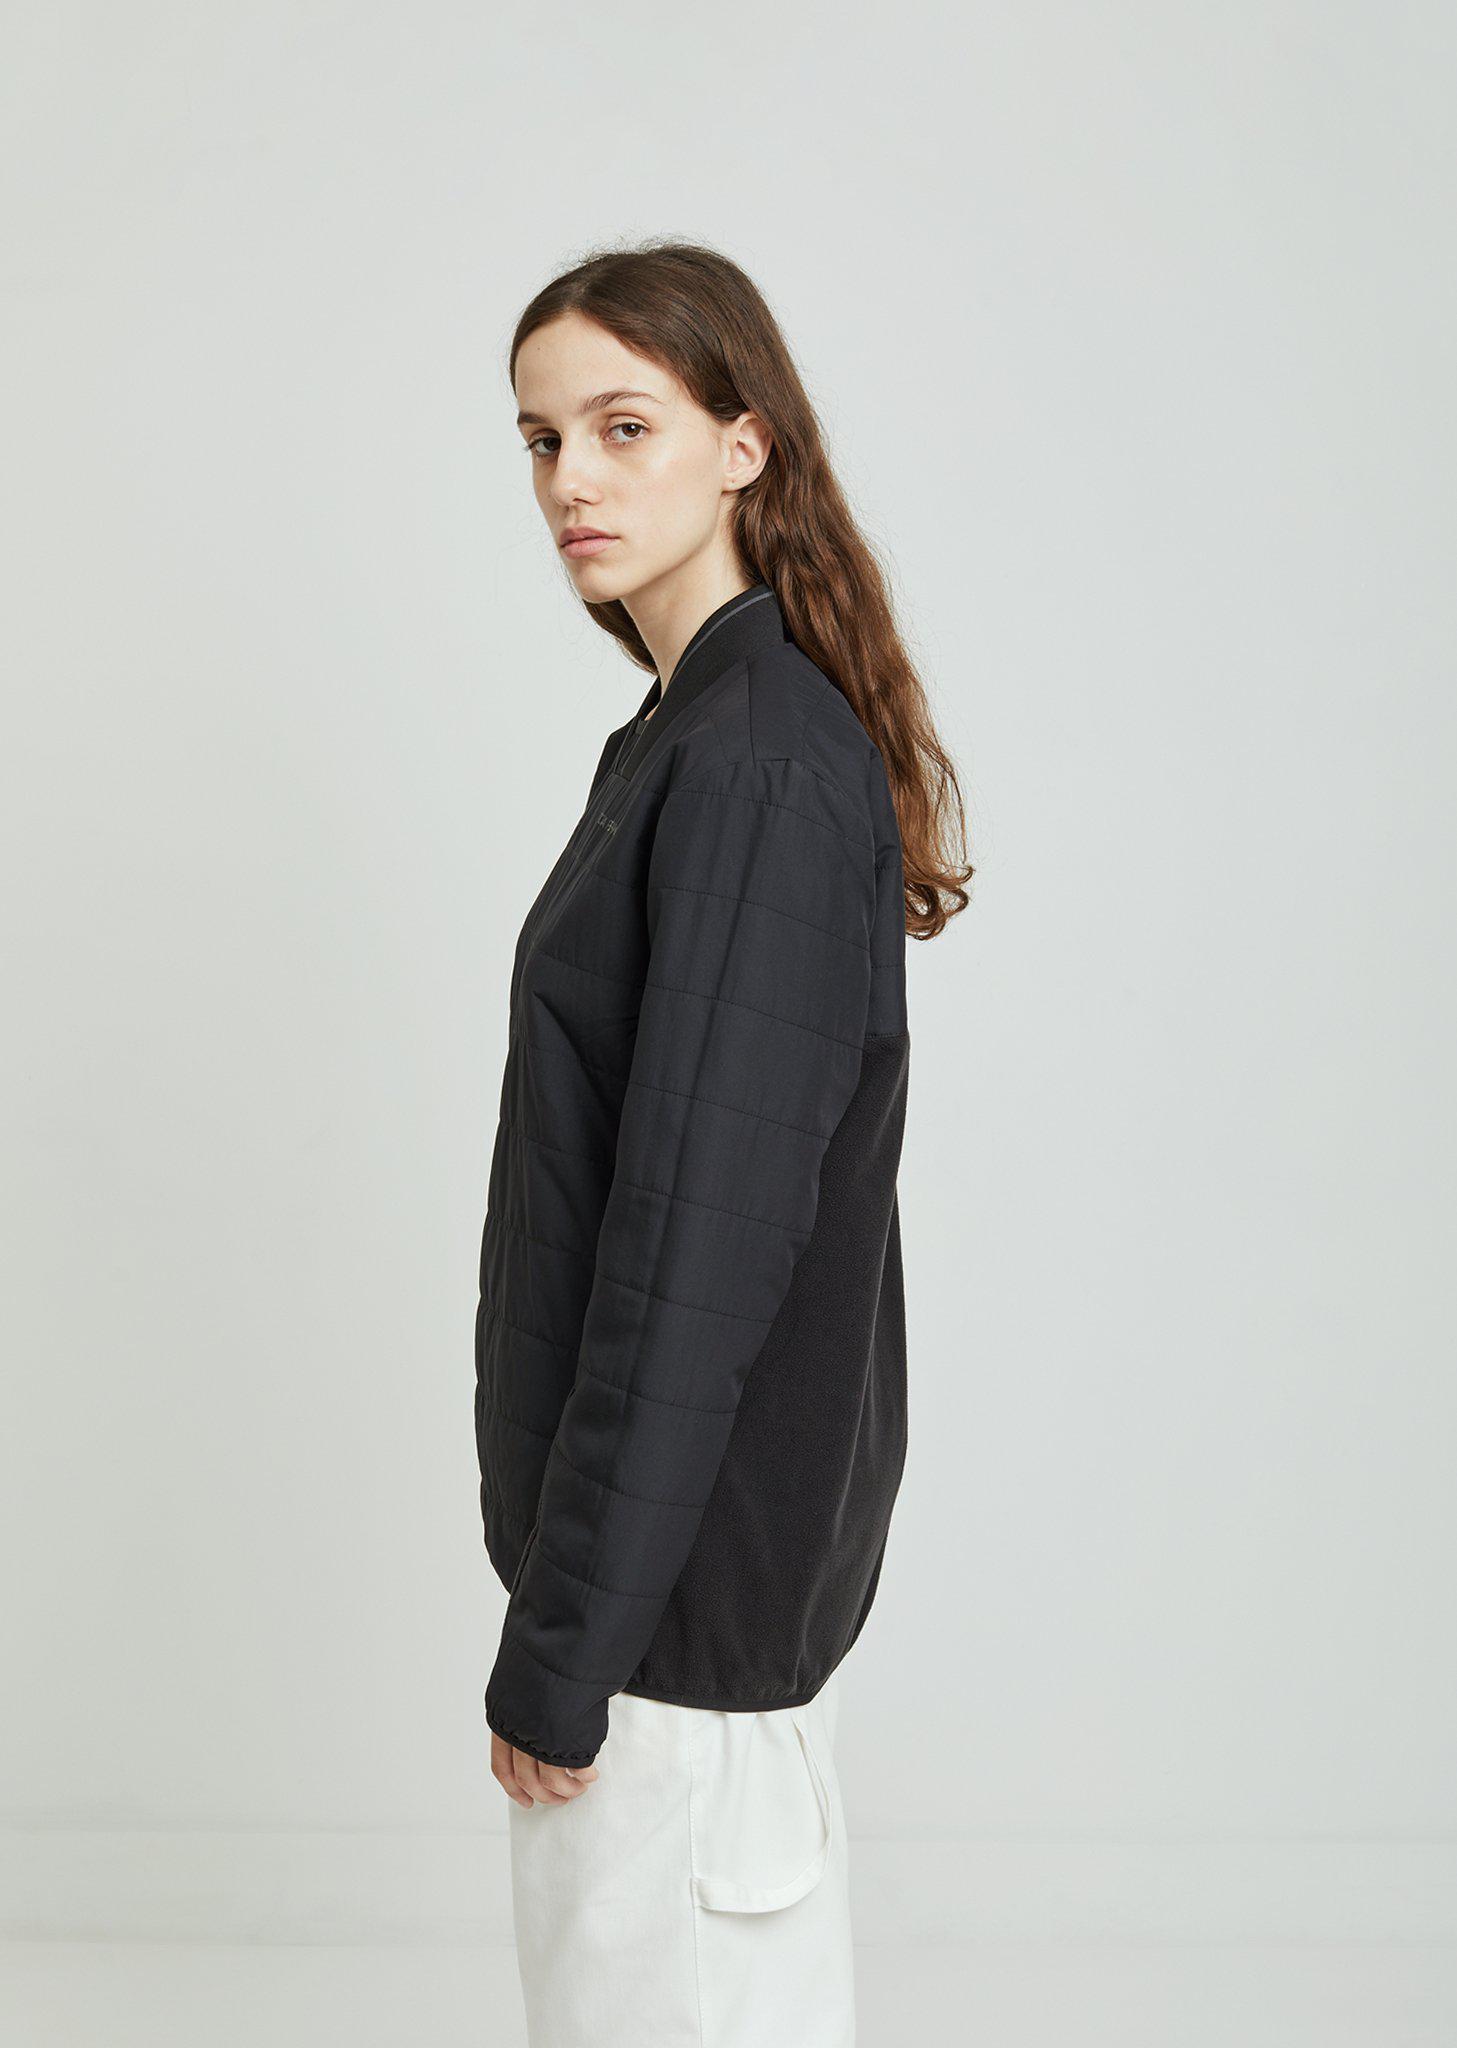 Gosha Rubchinskiy Synthetic Adidas Warm Sweatshirt in Black - Lyst